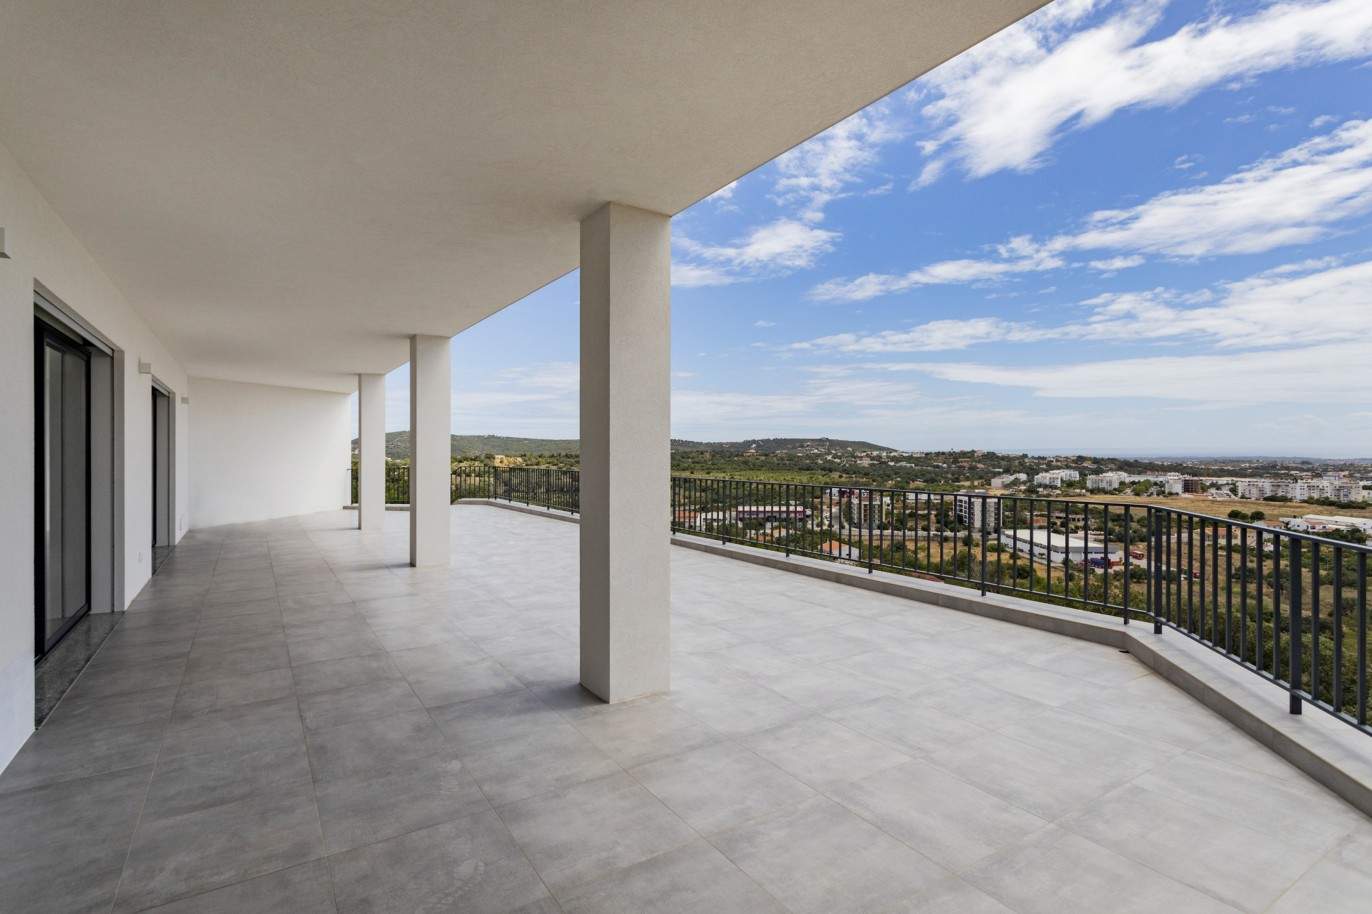 Villa de 4 dormitorios con piscina, en venta en S.Clemente, Loulé, Algarve_201812